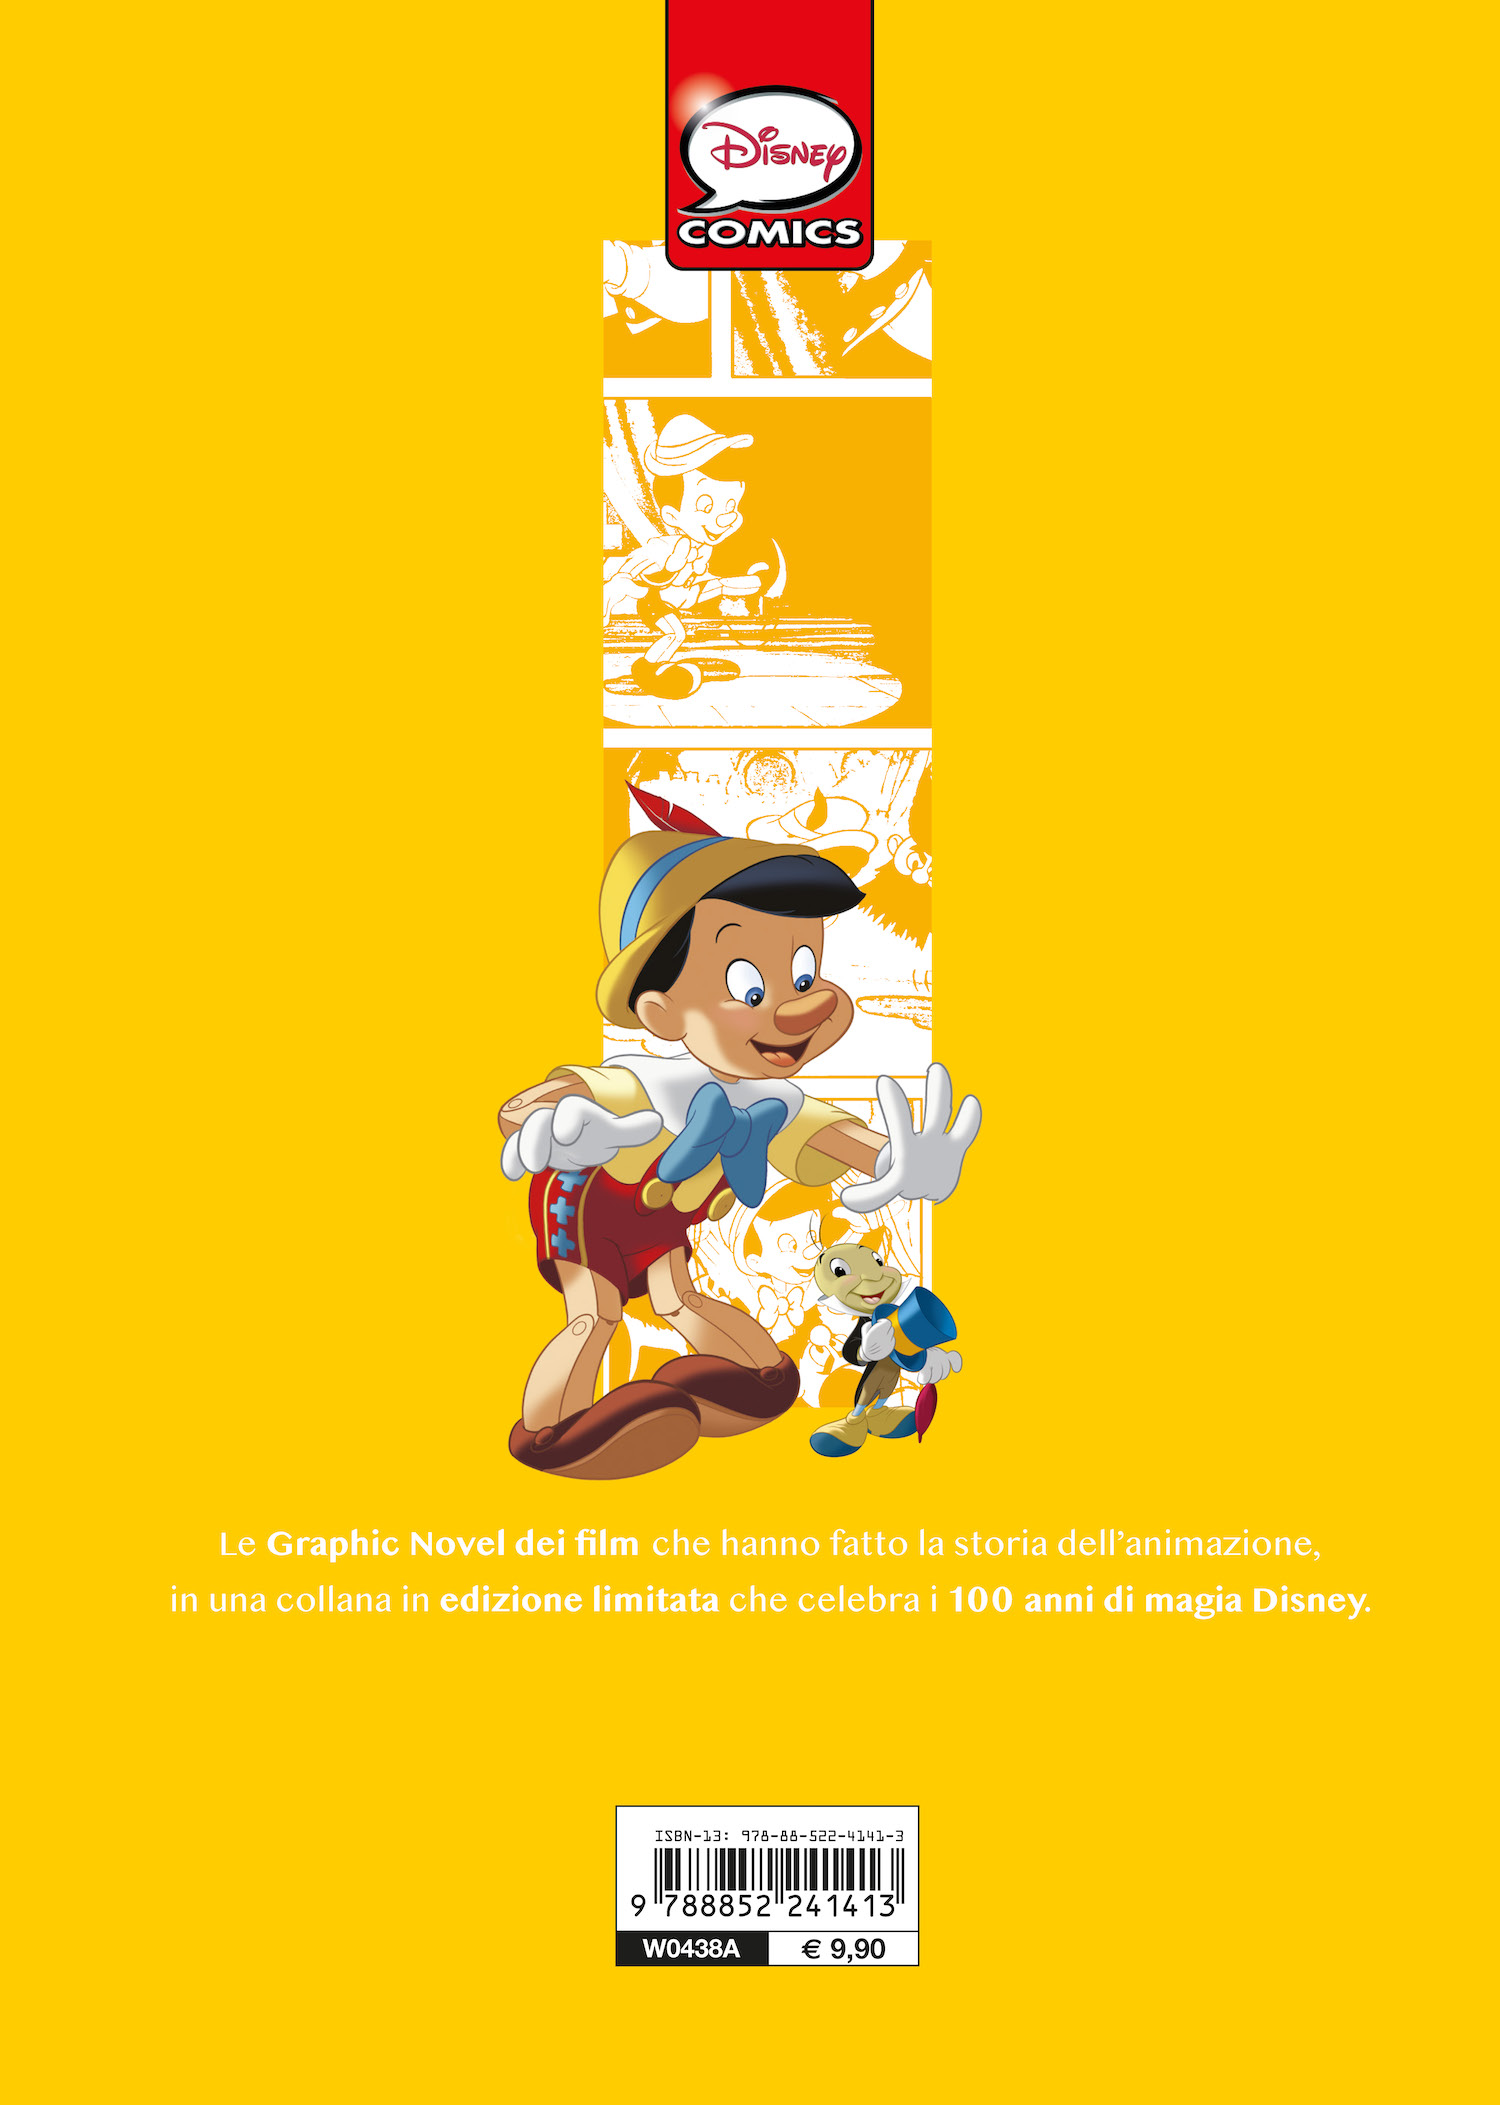 Pinocchio La storia a fumetti Edizione limitata